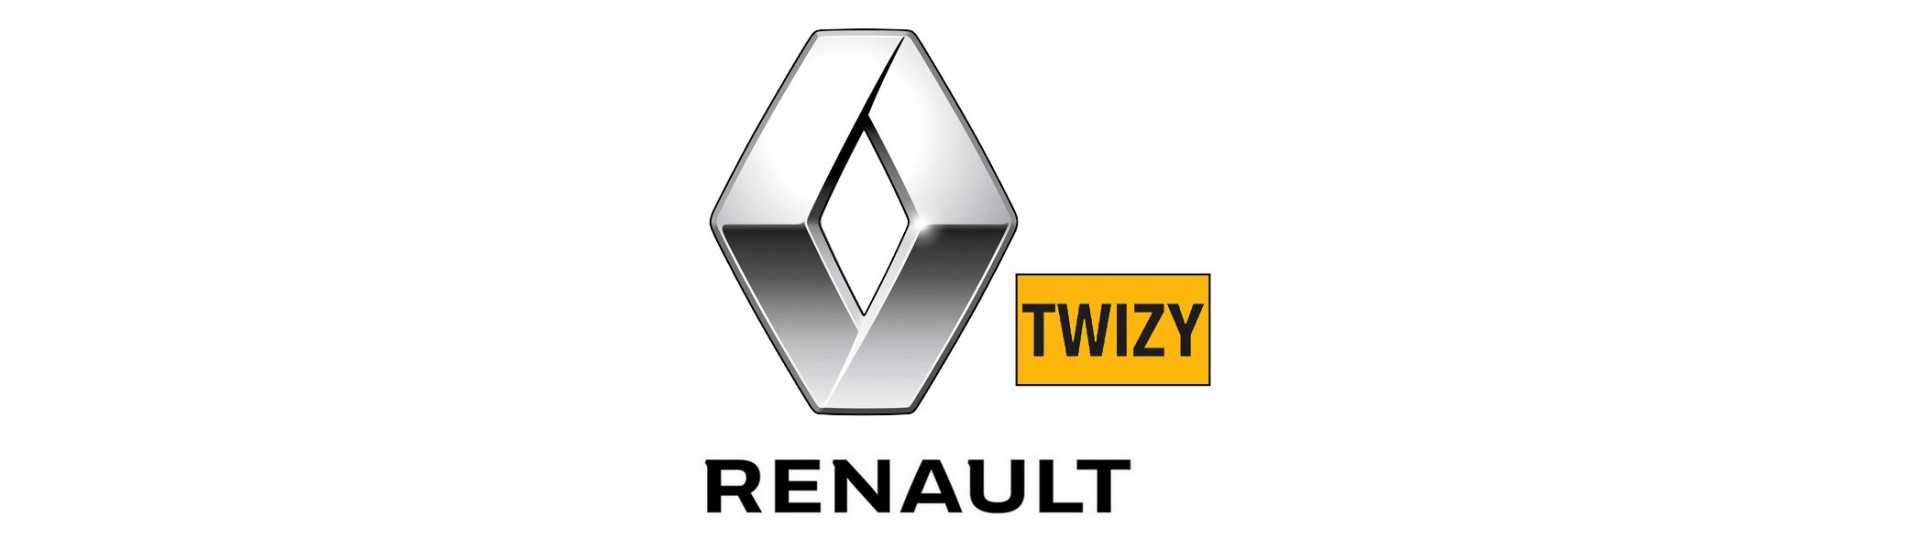 Migliore indicatore di prezzo per auto senza permesso Renault Twizy